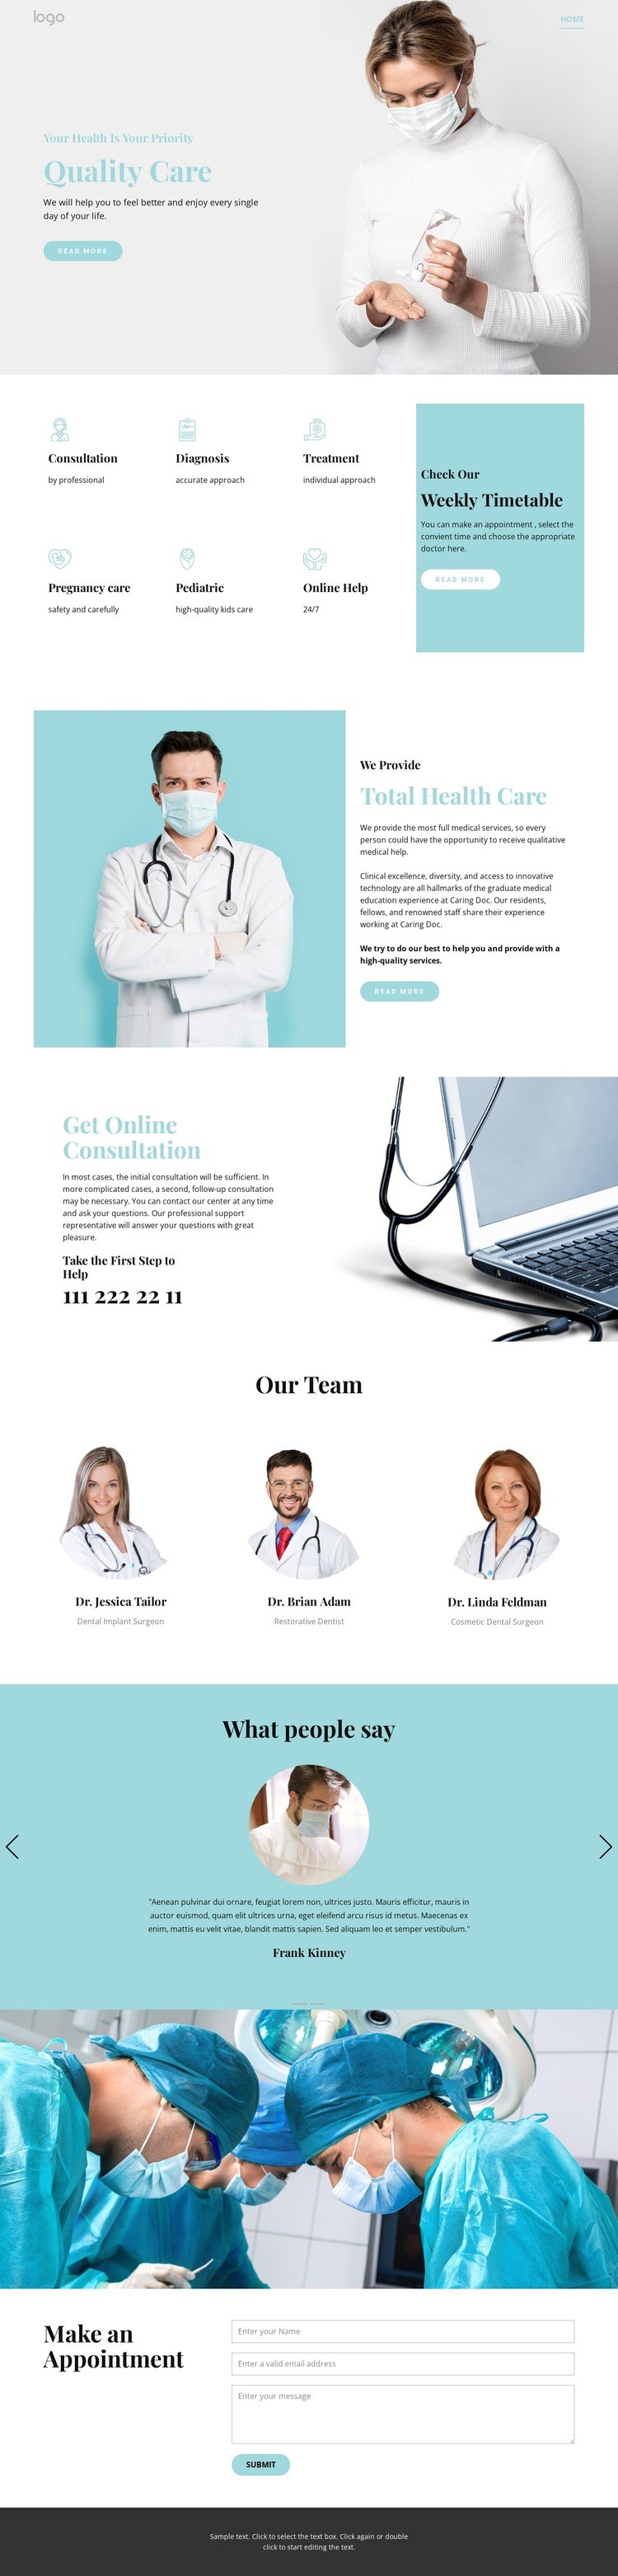 Kvalitetssjukvård Html webbplatsbyggare